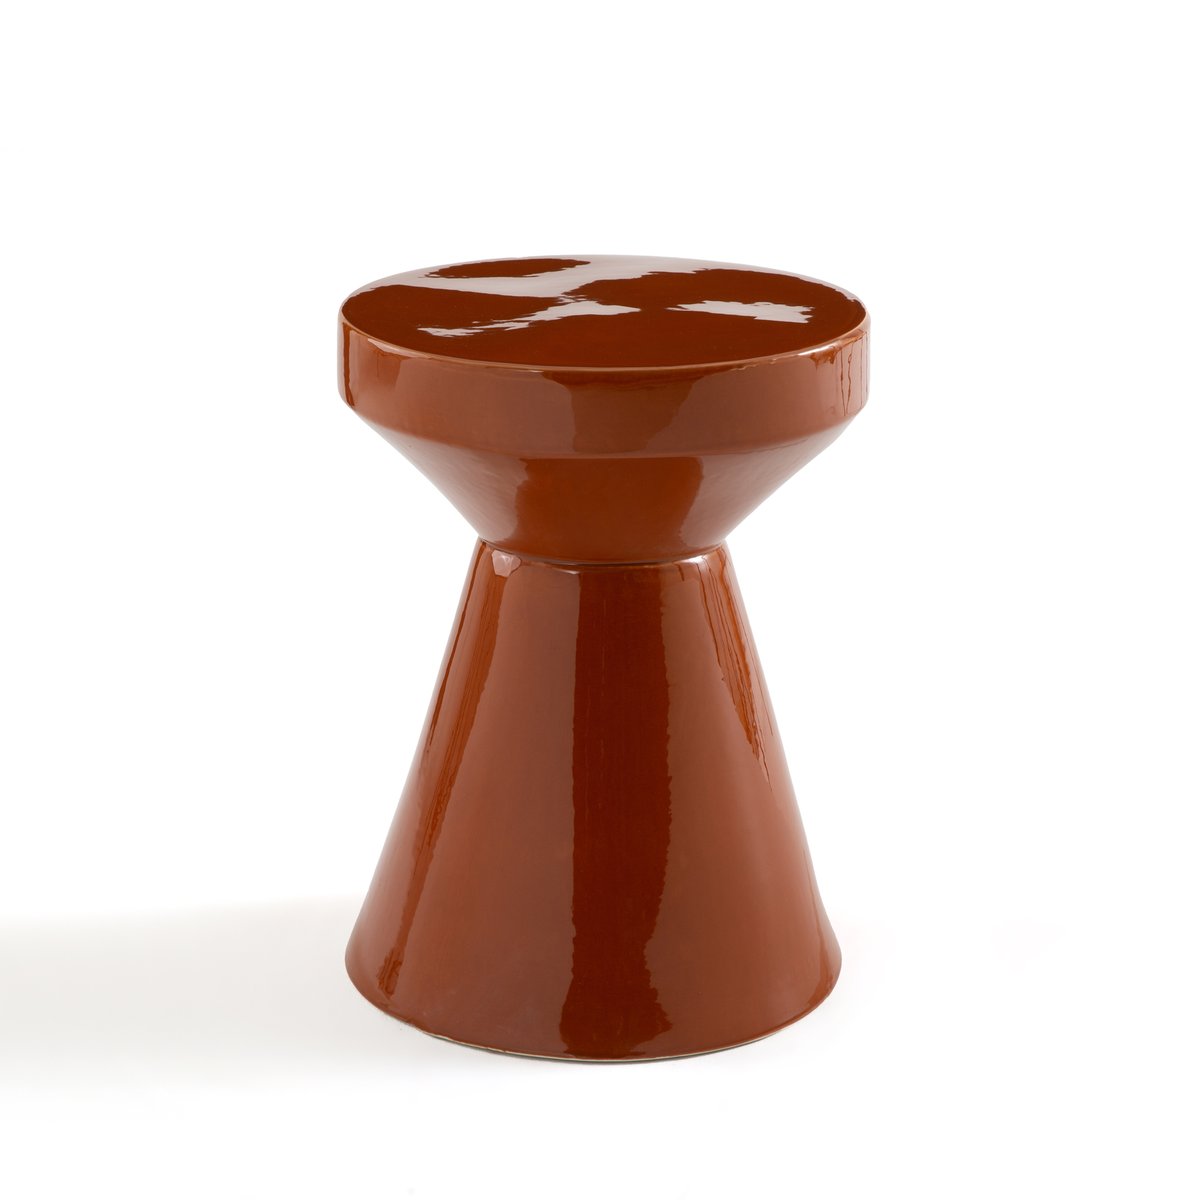 ваза из керамики pastela единый размер каштановый Стол диванный из керамики Matmat единый размер каштановый